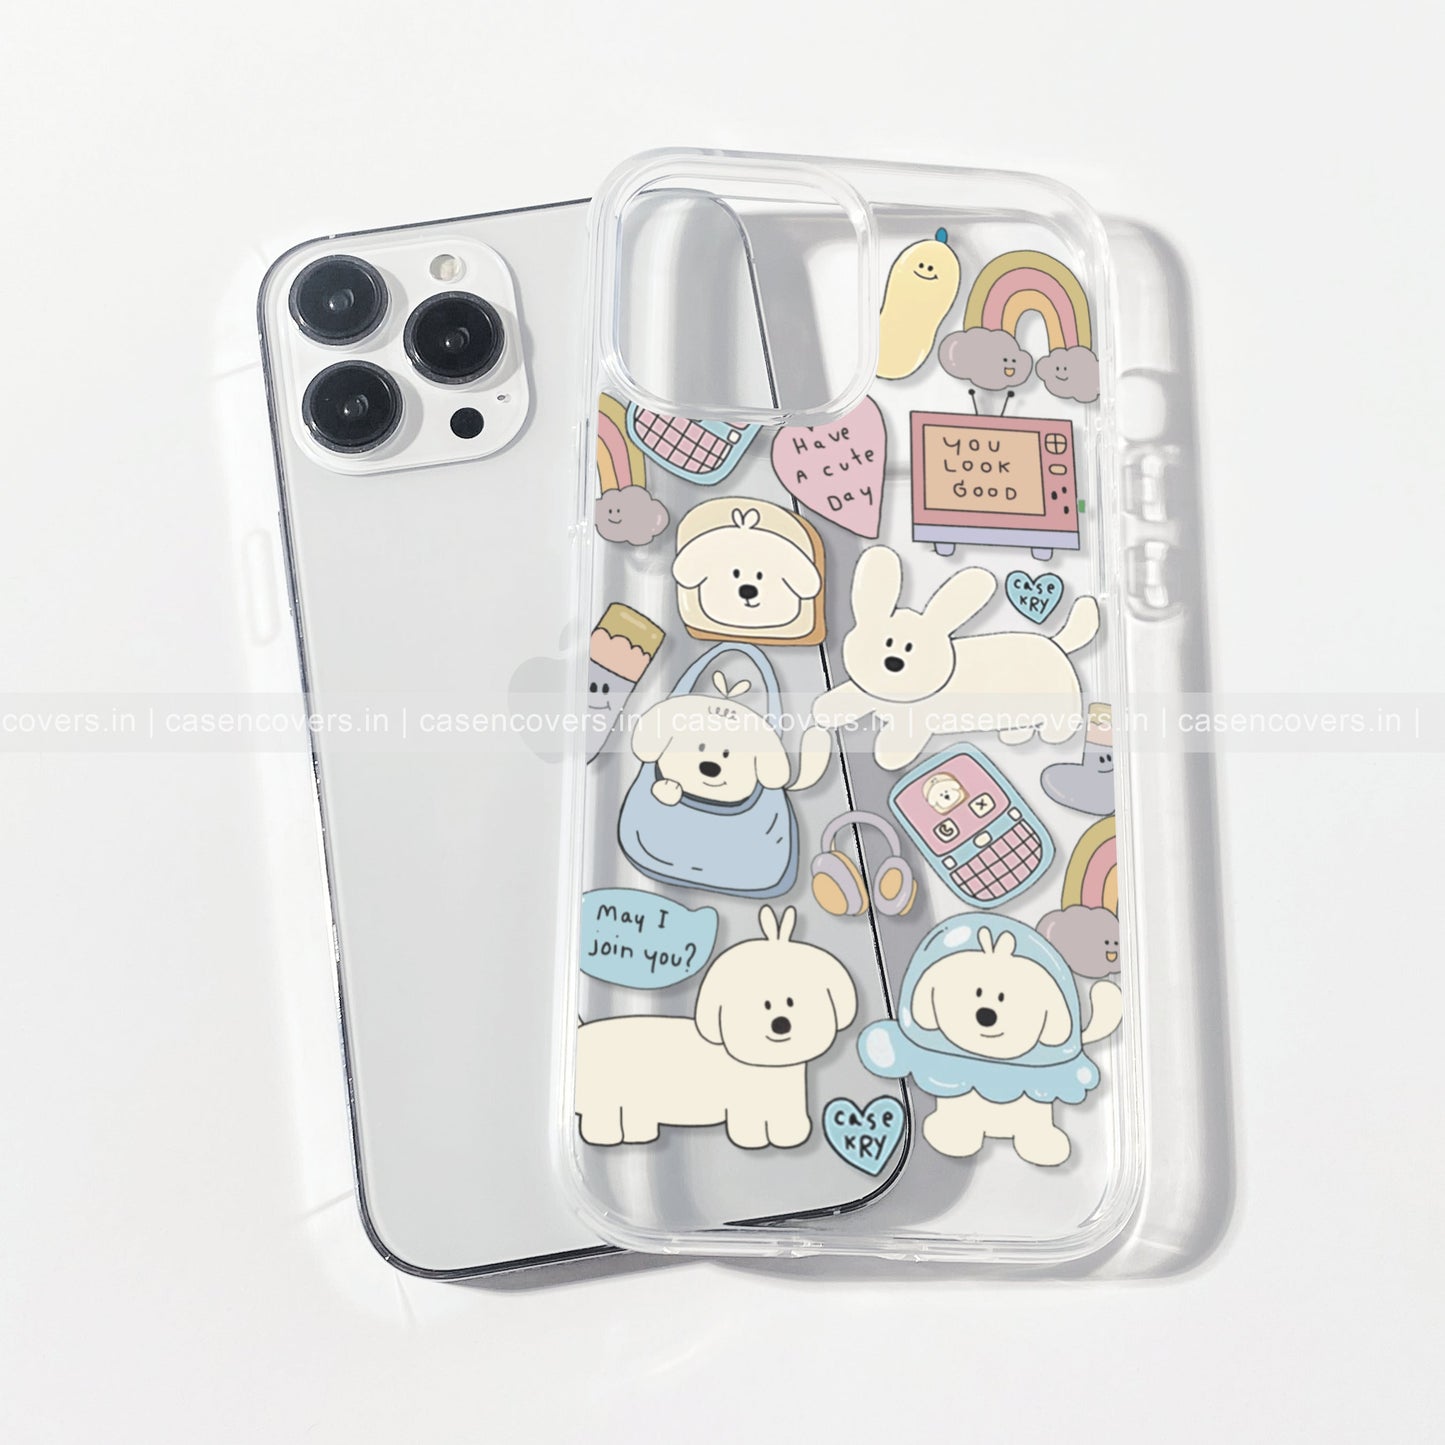 Cutest phone case